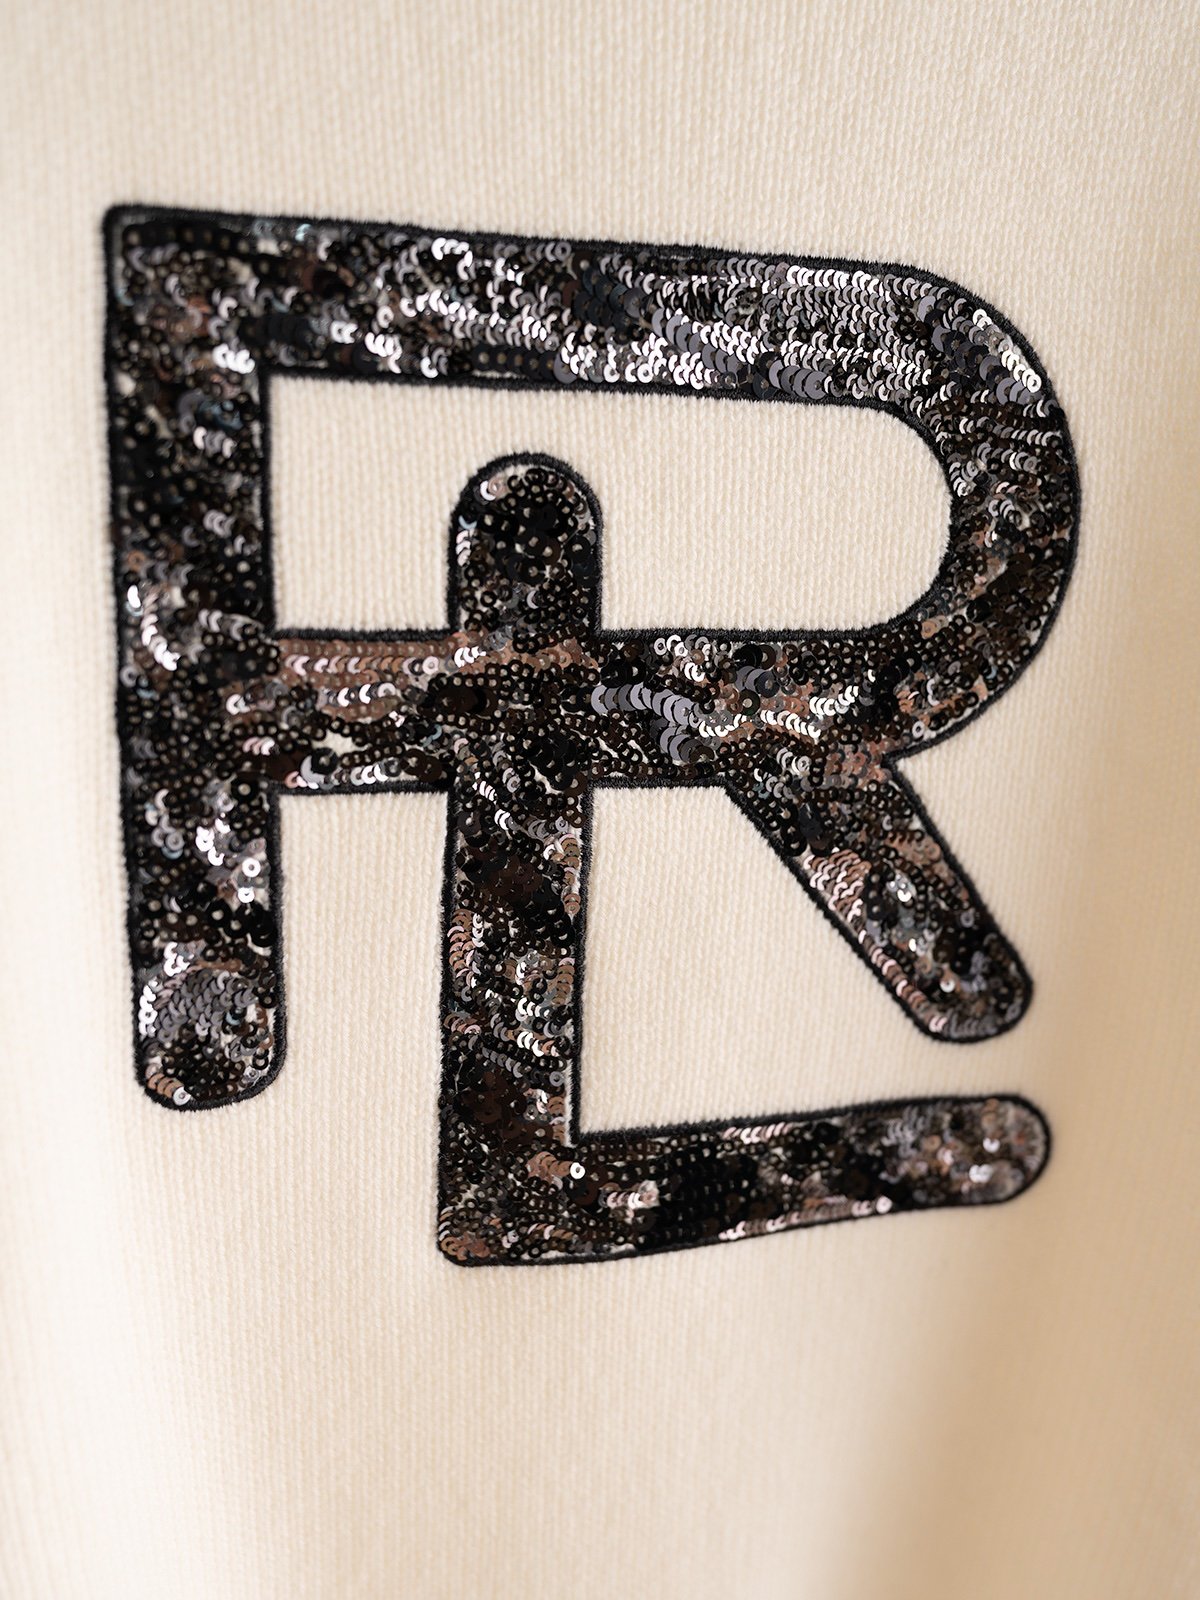 RL主线珠片圆领款7针两条毛织机单边织法前幅用圆形珠片车成RL图形凸出品牌的辨识度羊绒羊毛混纺纱线高级感